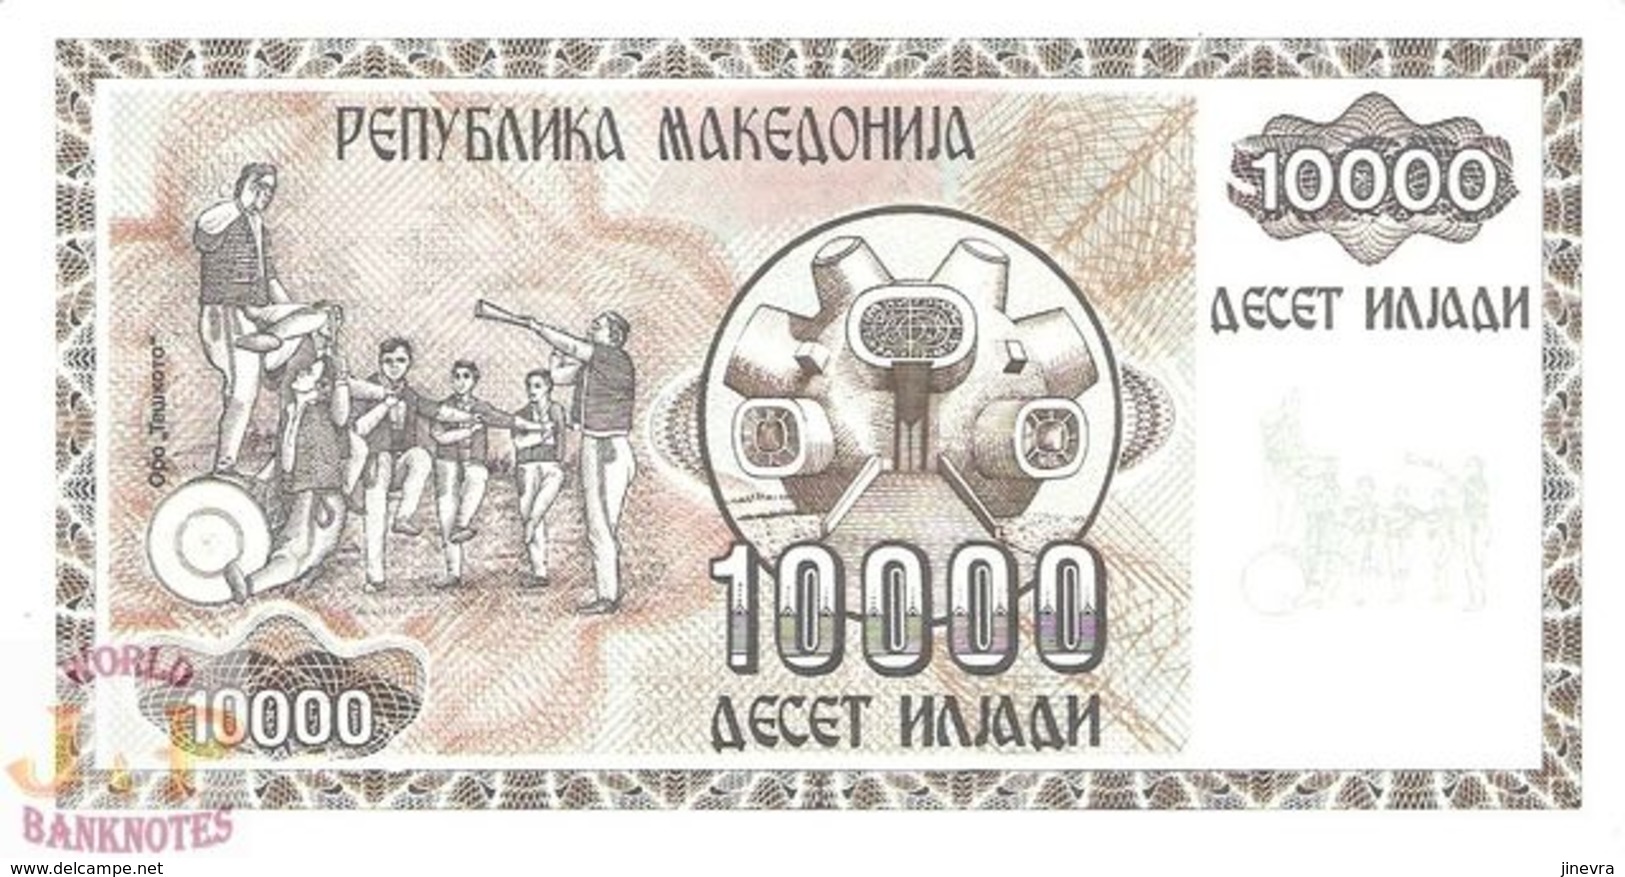 MACEDONIA 10000 DENAR 1992 PICK 8A UNC - North Macedonia